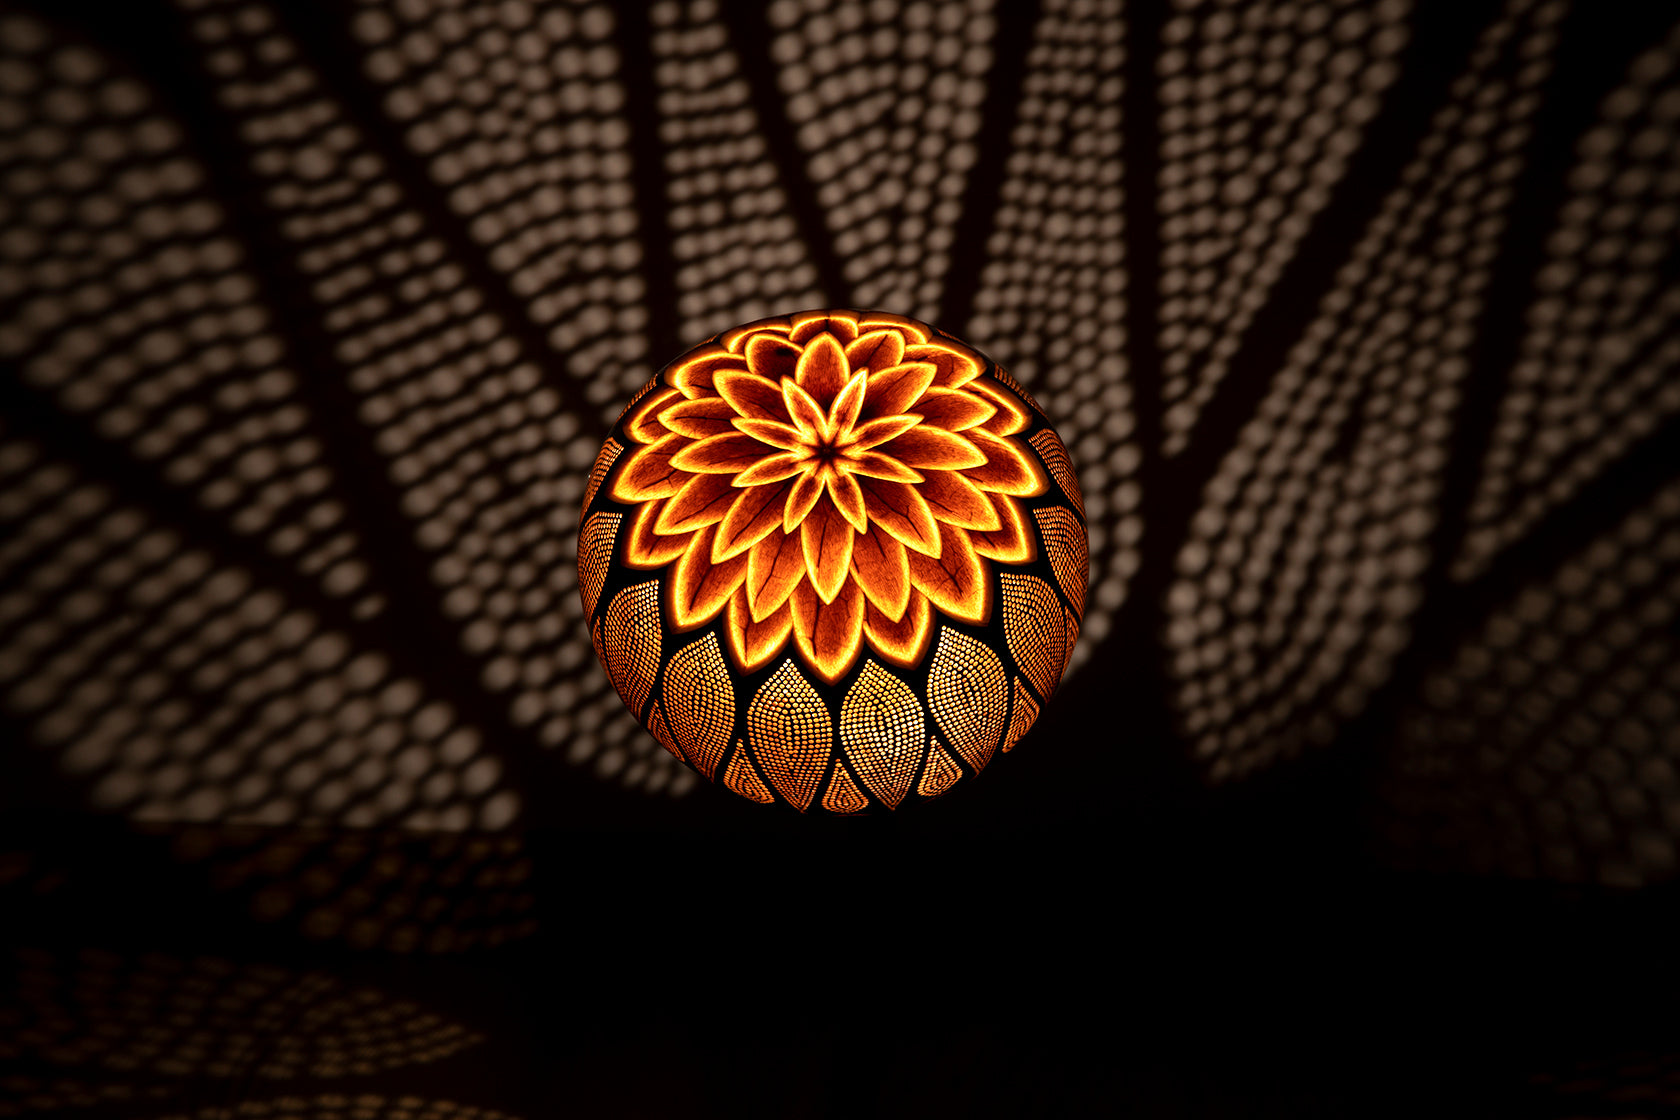 Lamp Dahlia by Karol Okoński